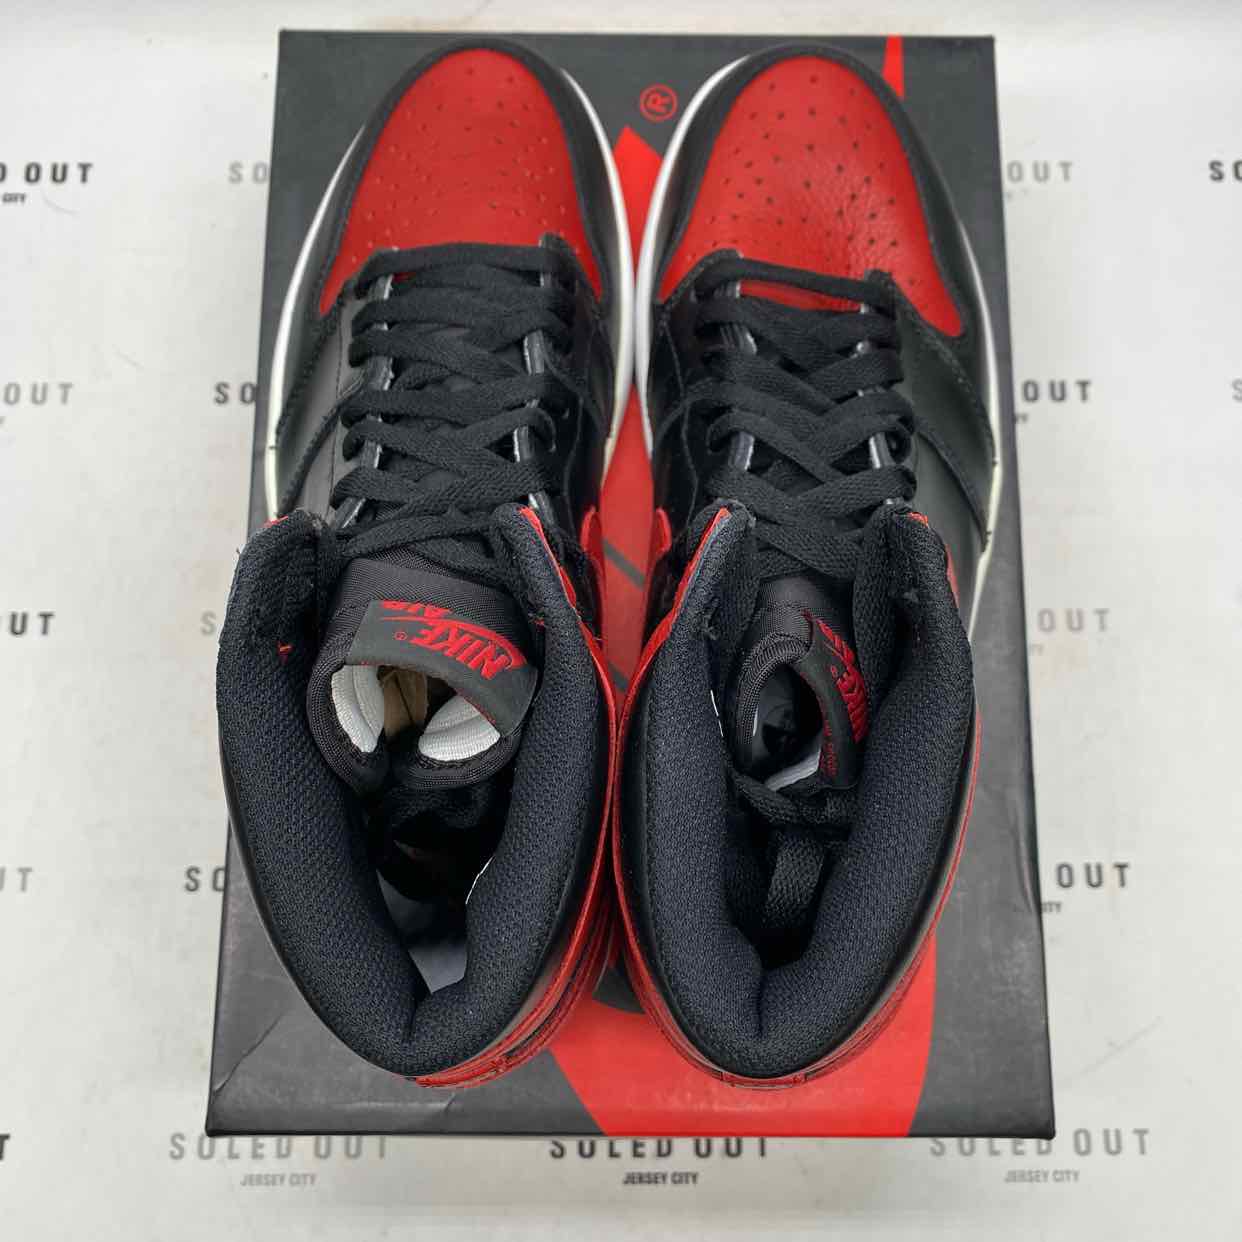 Air Jordan 1 Retro High OG "Banned" 2016 New Size 11